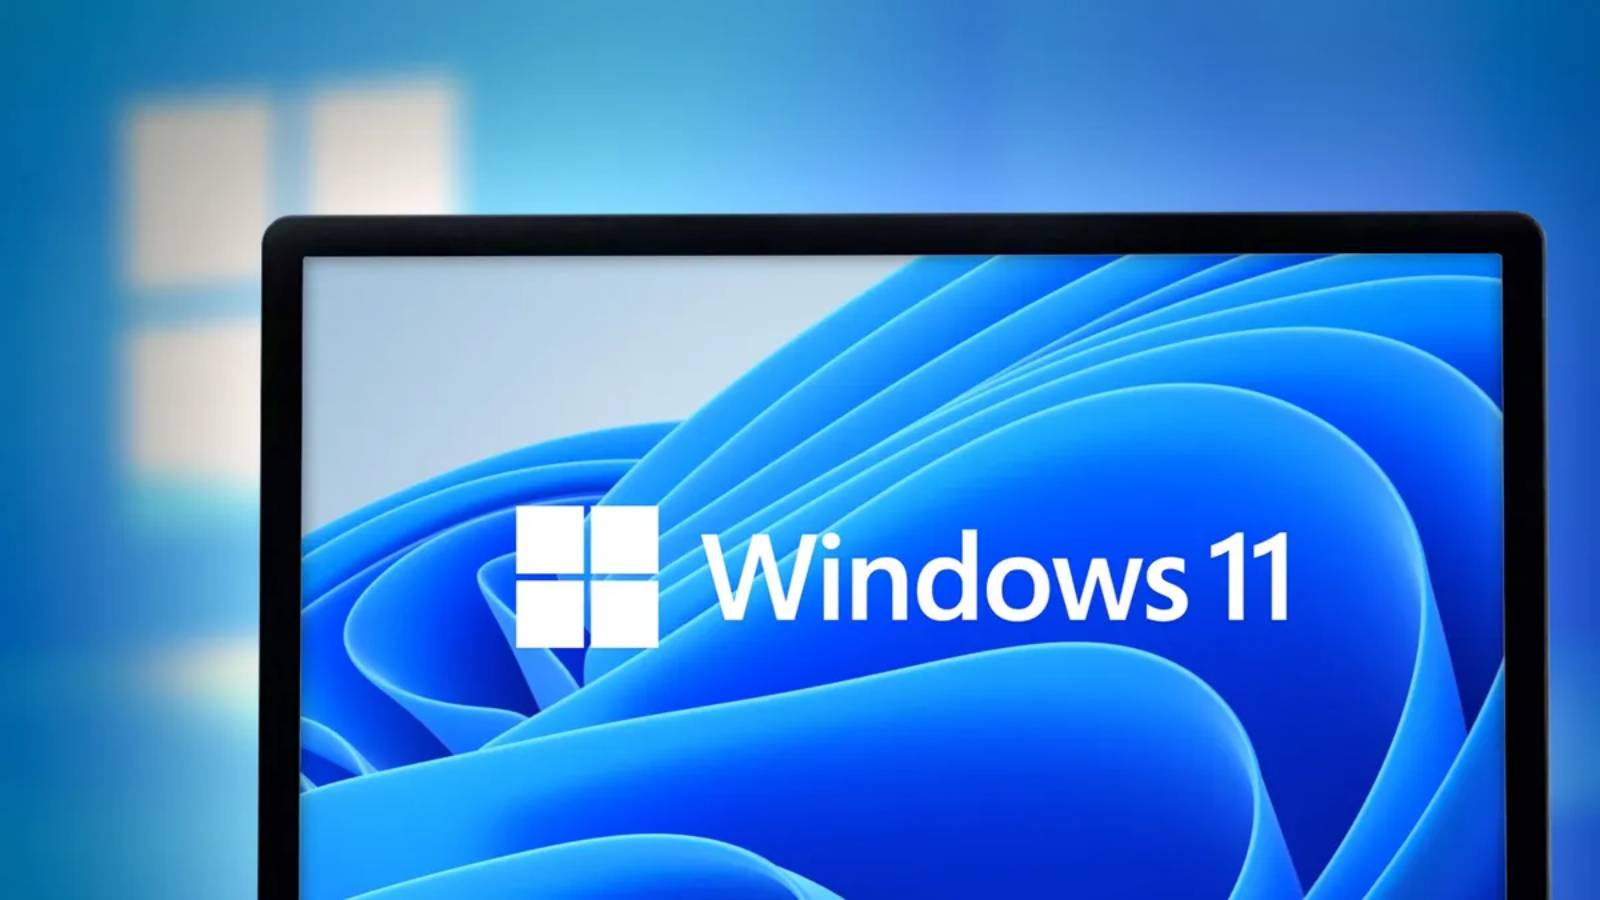 La nuova decisione RADICALE di Microsoft Windows 11 stupisce il mondo